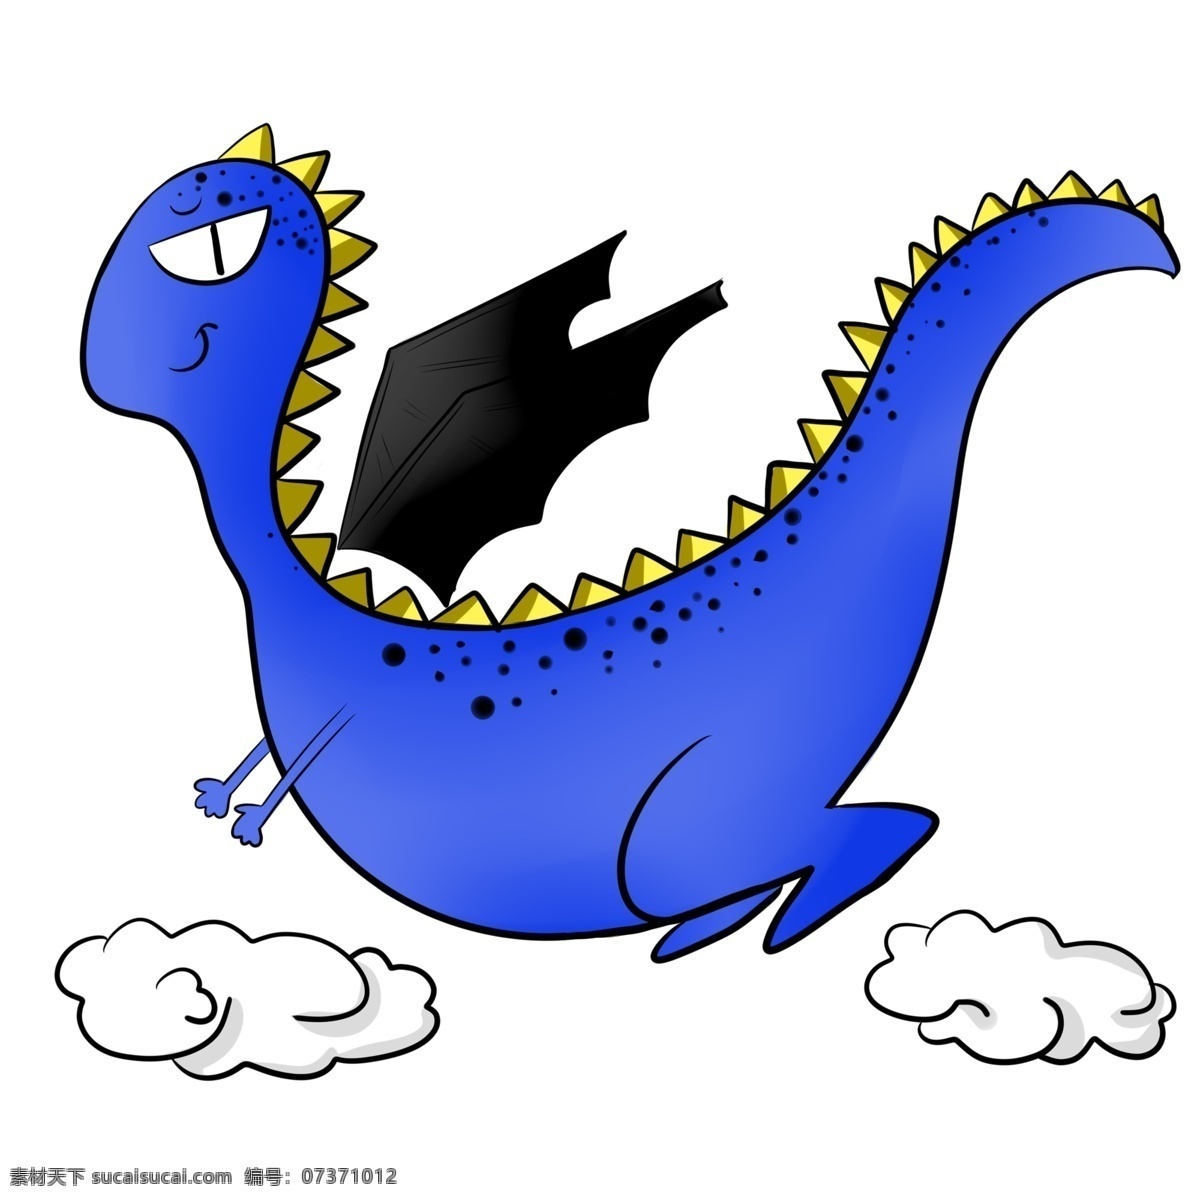 蓝色 恐龙 装饰城 蓝色的恐龙 可爱的恐龙 创意恐龙 恐龙装饰 恐龙插画 精美恐龙 卡通恐龙